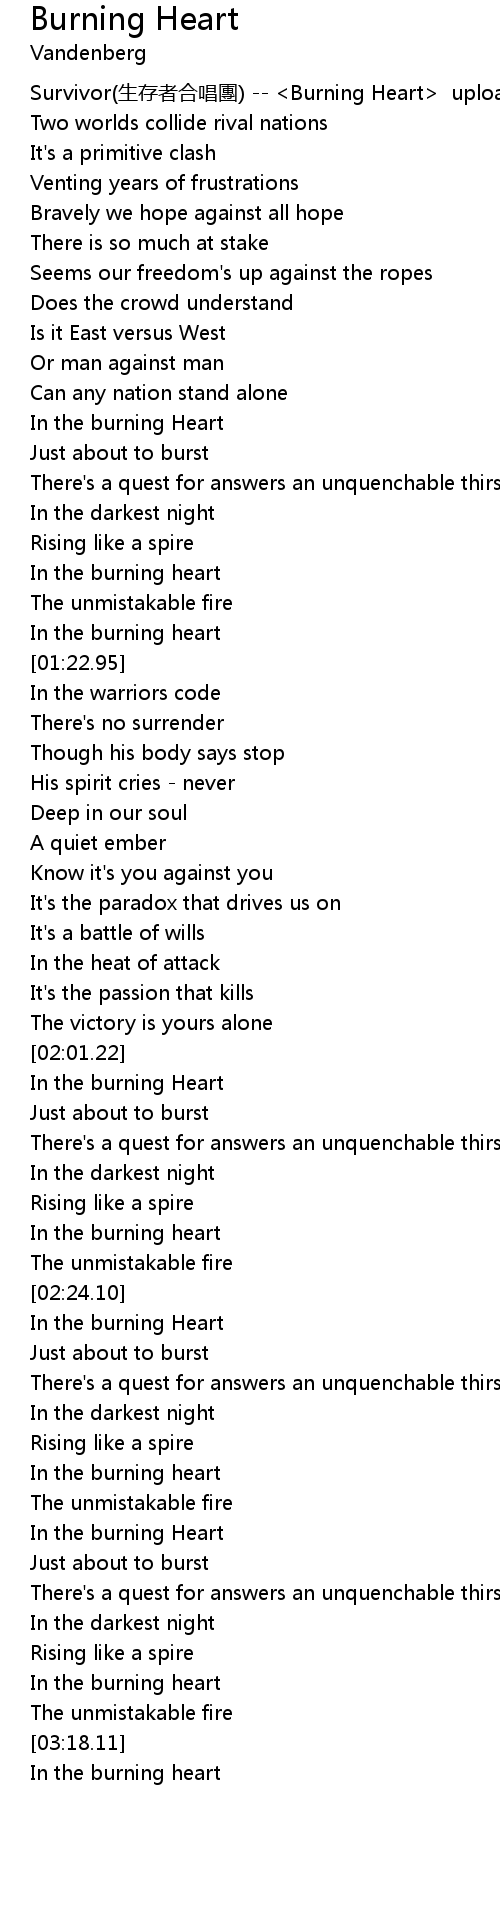 Survivor - Burning Heart (Tradução